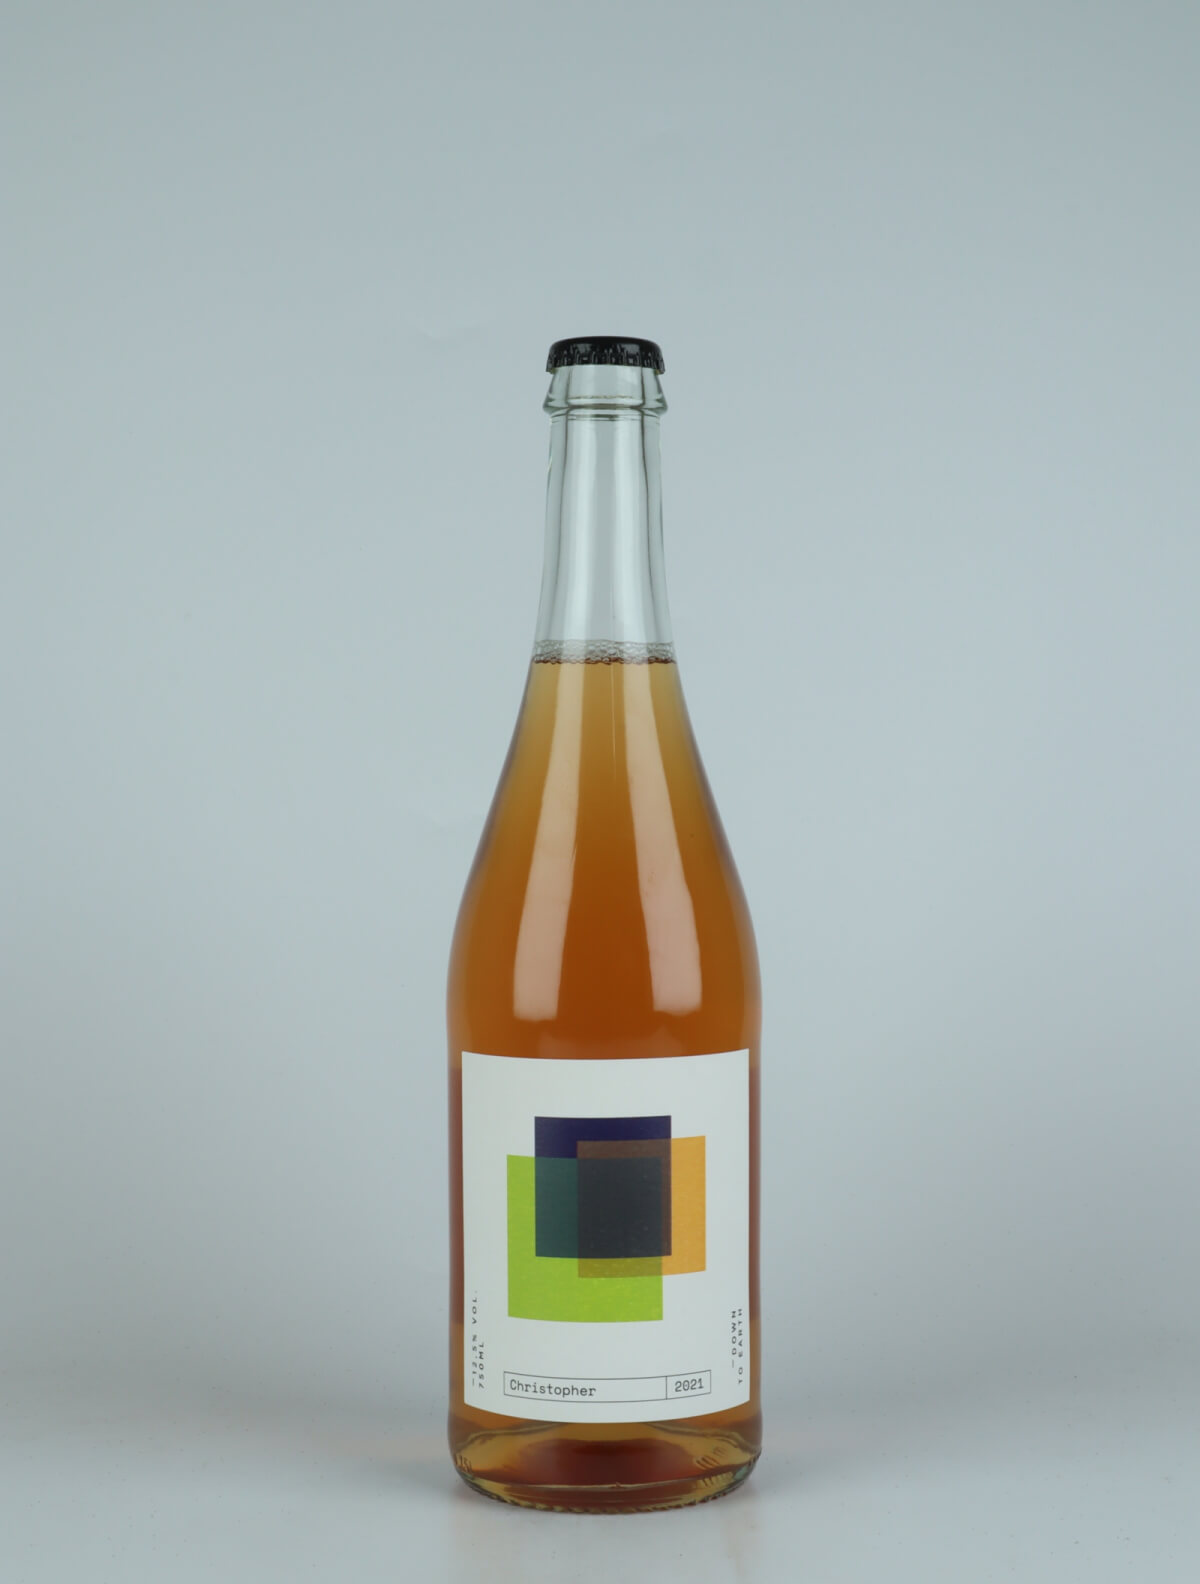 En flaske 2021 Christopher Orange vin fra do.t.e Vini, Toscana i Italien